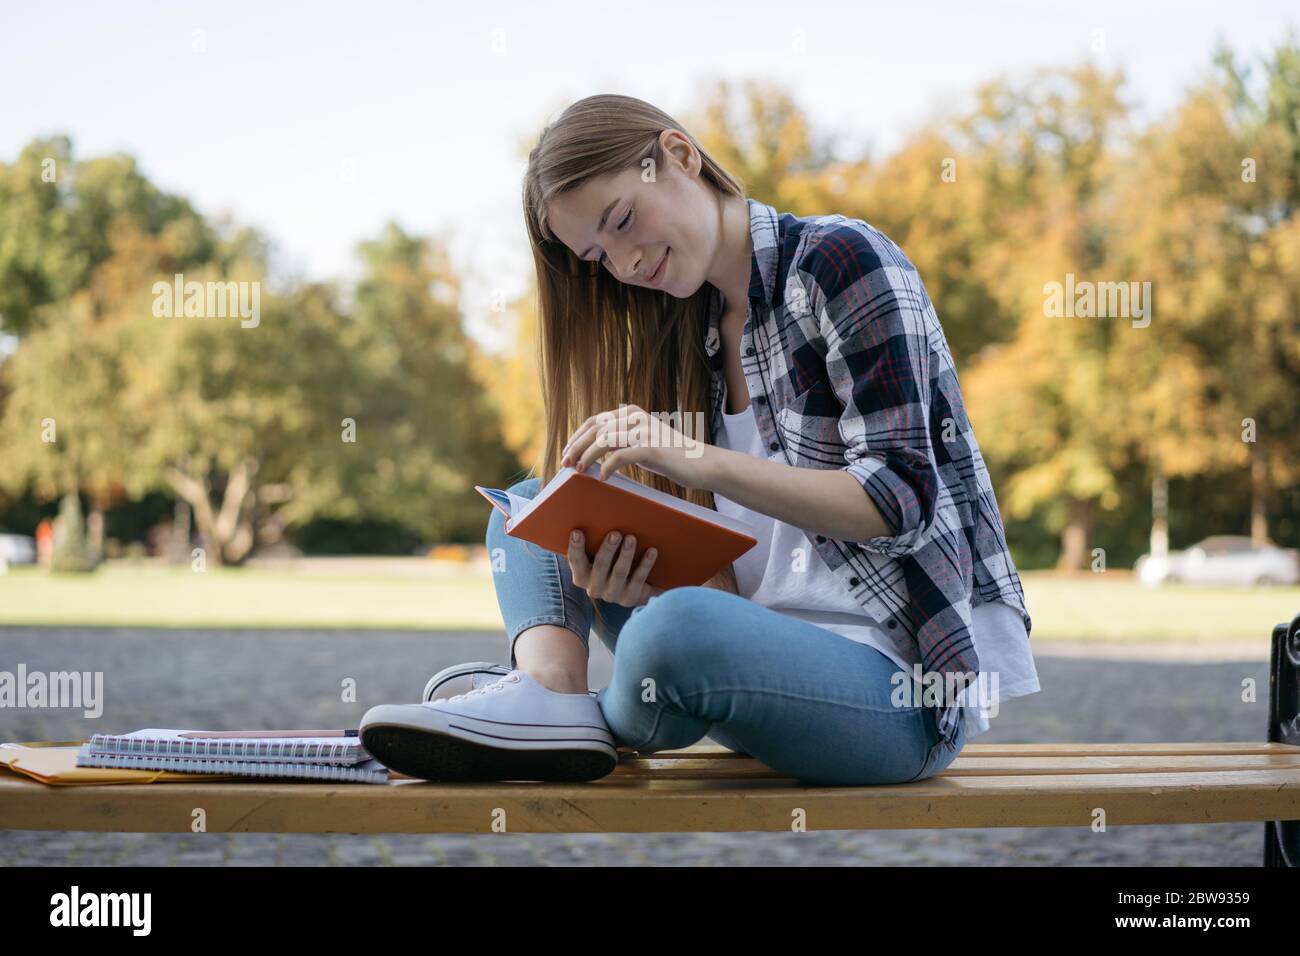 Belle femme lisant un livre assis sur un banc. Étudiant étudiant étudiant, apprentissage de la langue, préparation à l'examen, projet de travail dans le parc. Concept d'éducation Banque D'Images